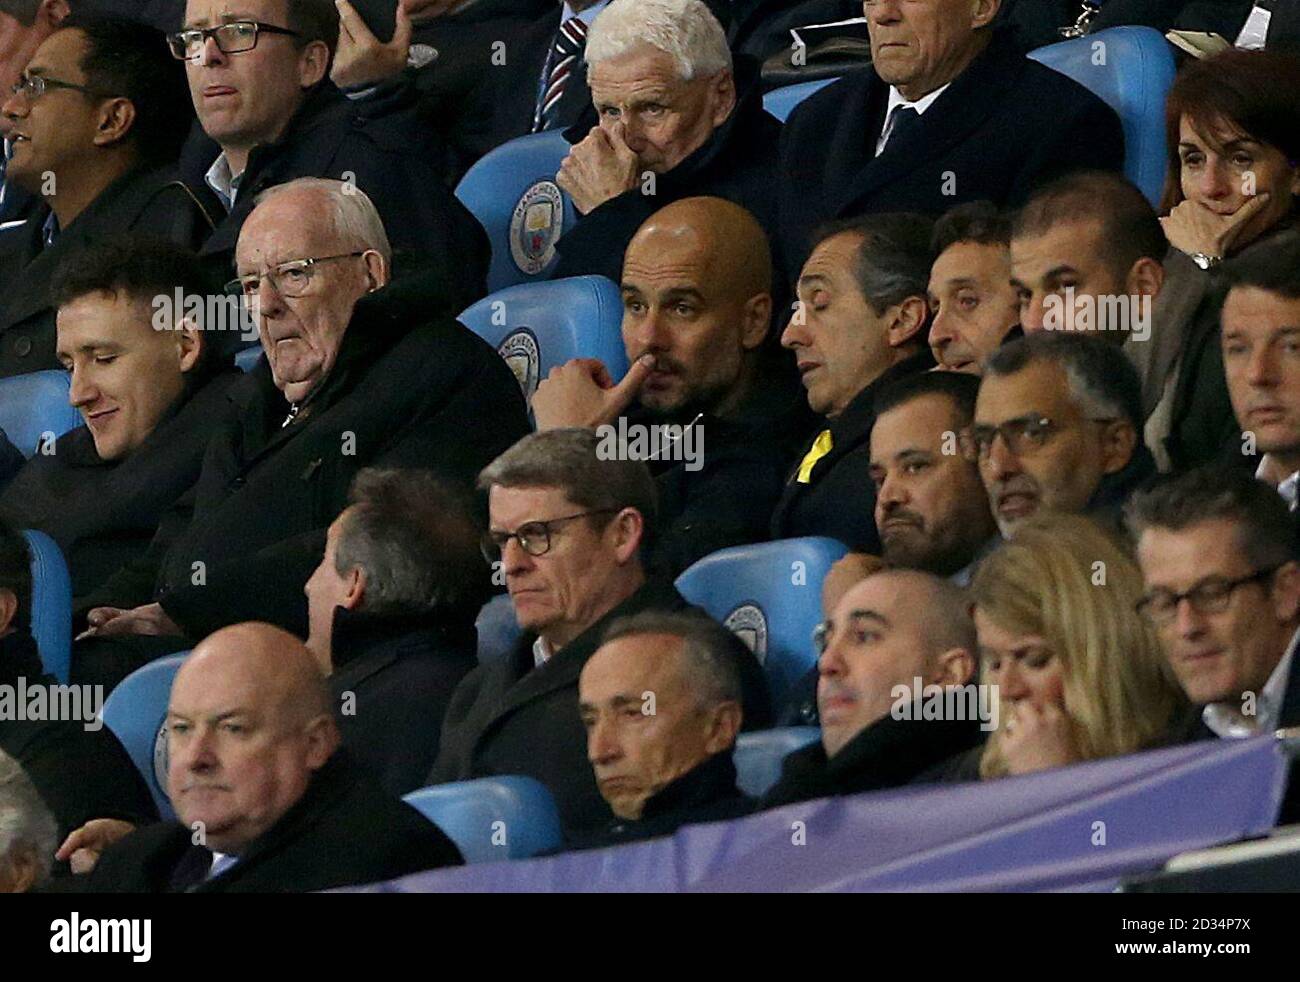 PEP Guardiola, directrice de Manchester City (au centre), dans les tribunes de la Ligue des champions de l'UEFA, quart de finale au Etihad Stadium, Manchester. Banque D'Images